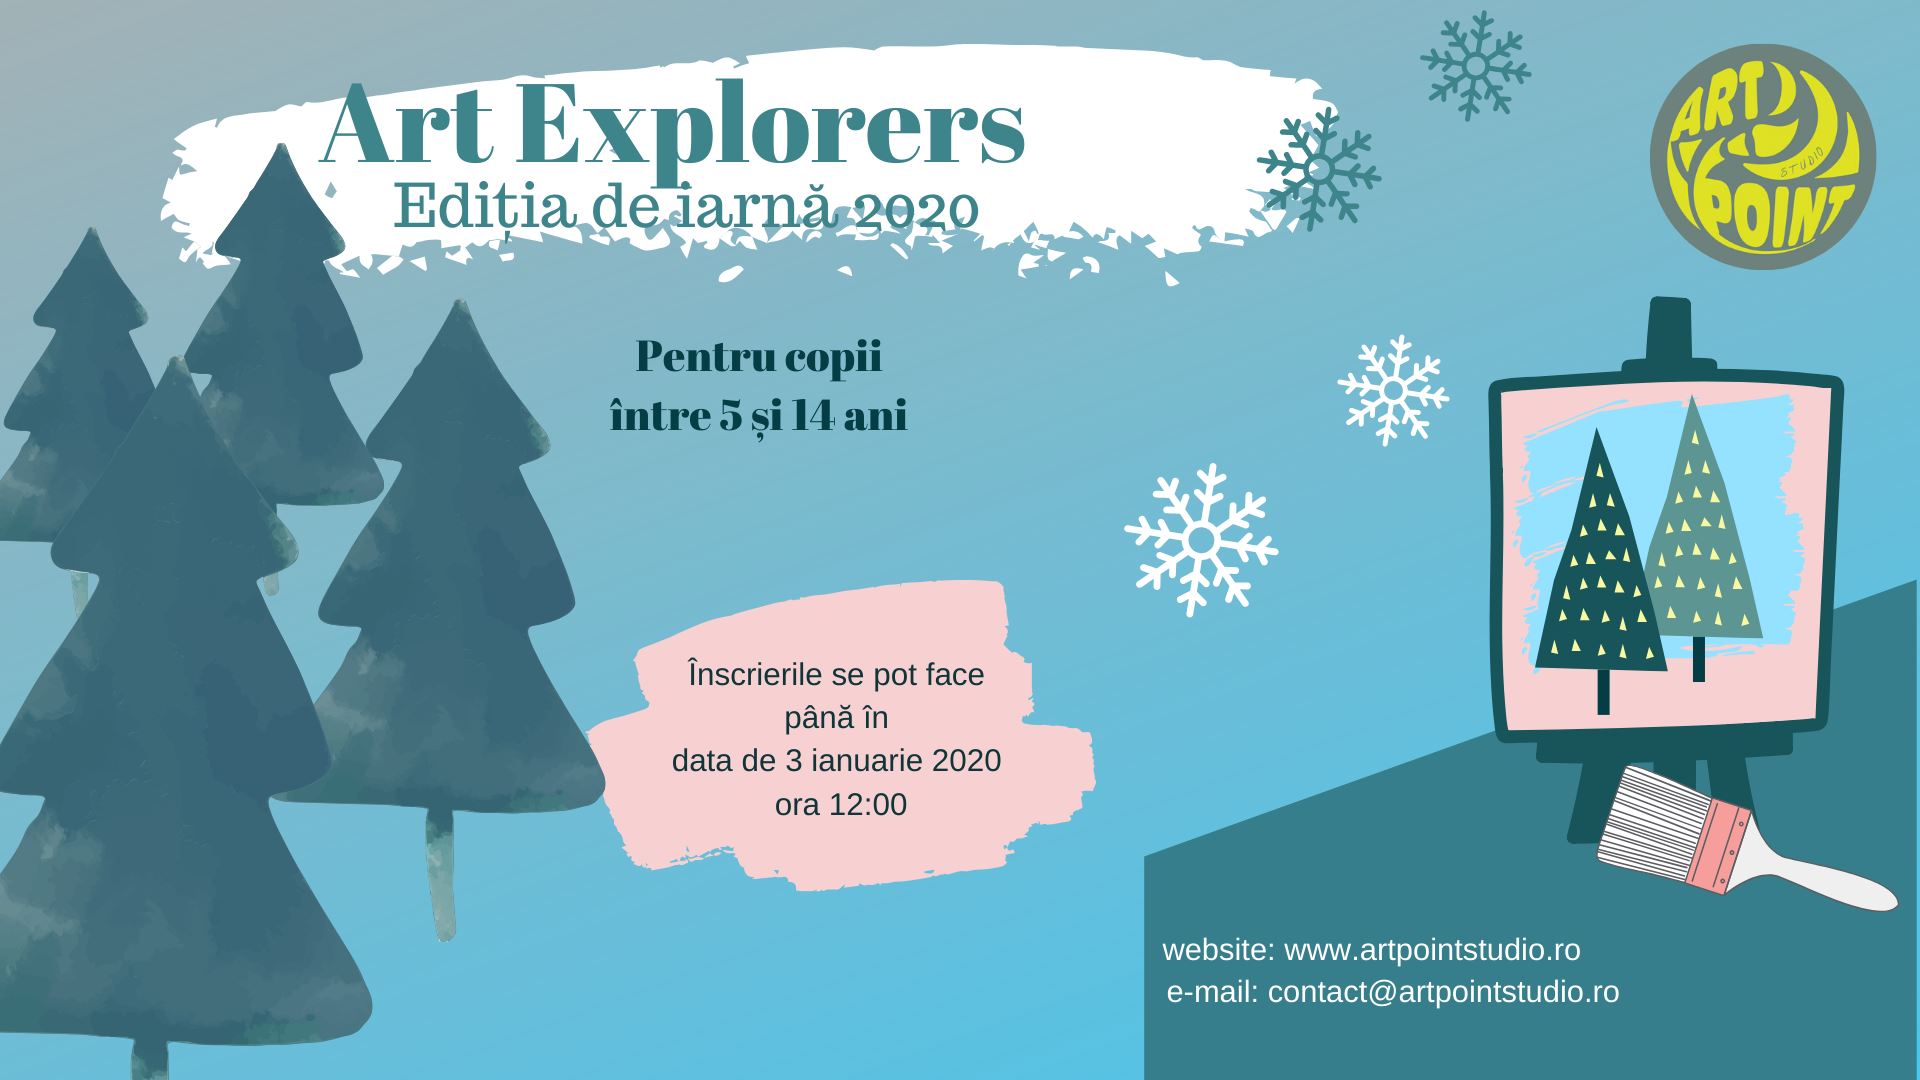 Art explorers ediția de iarnă 2020